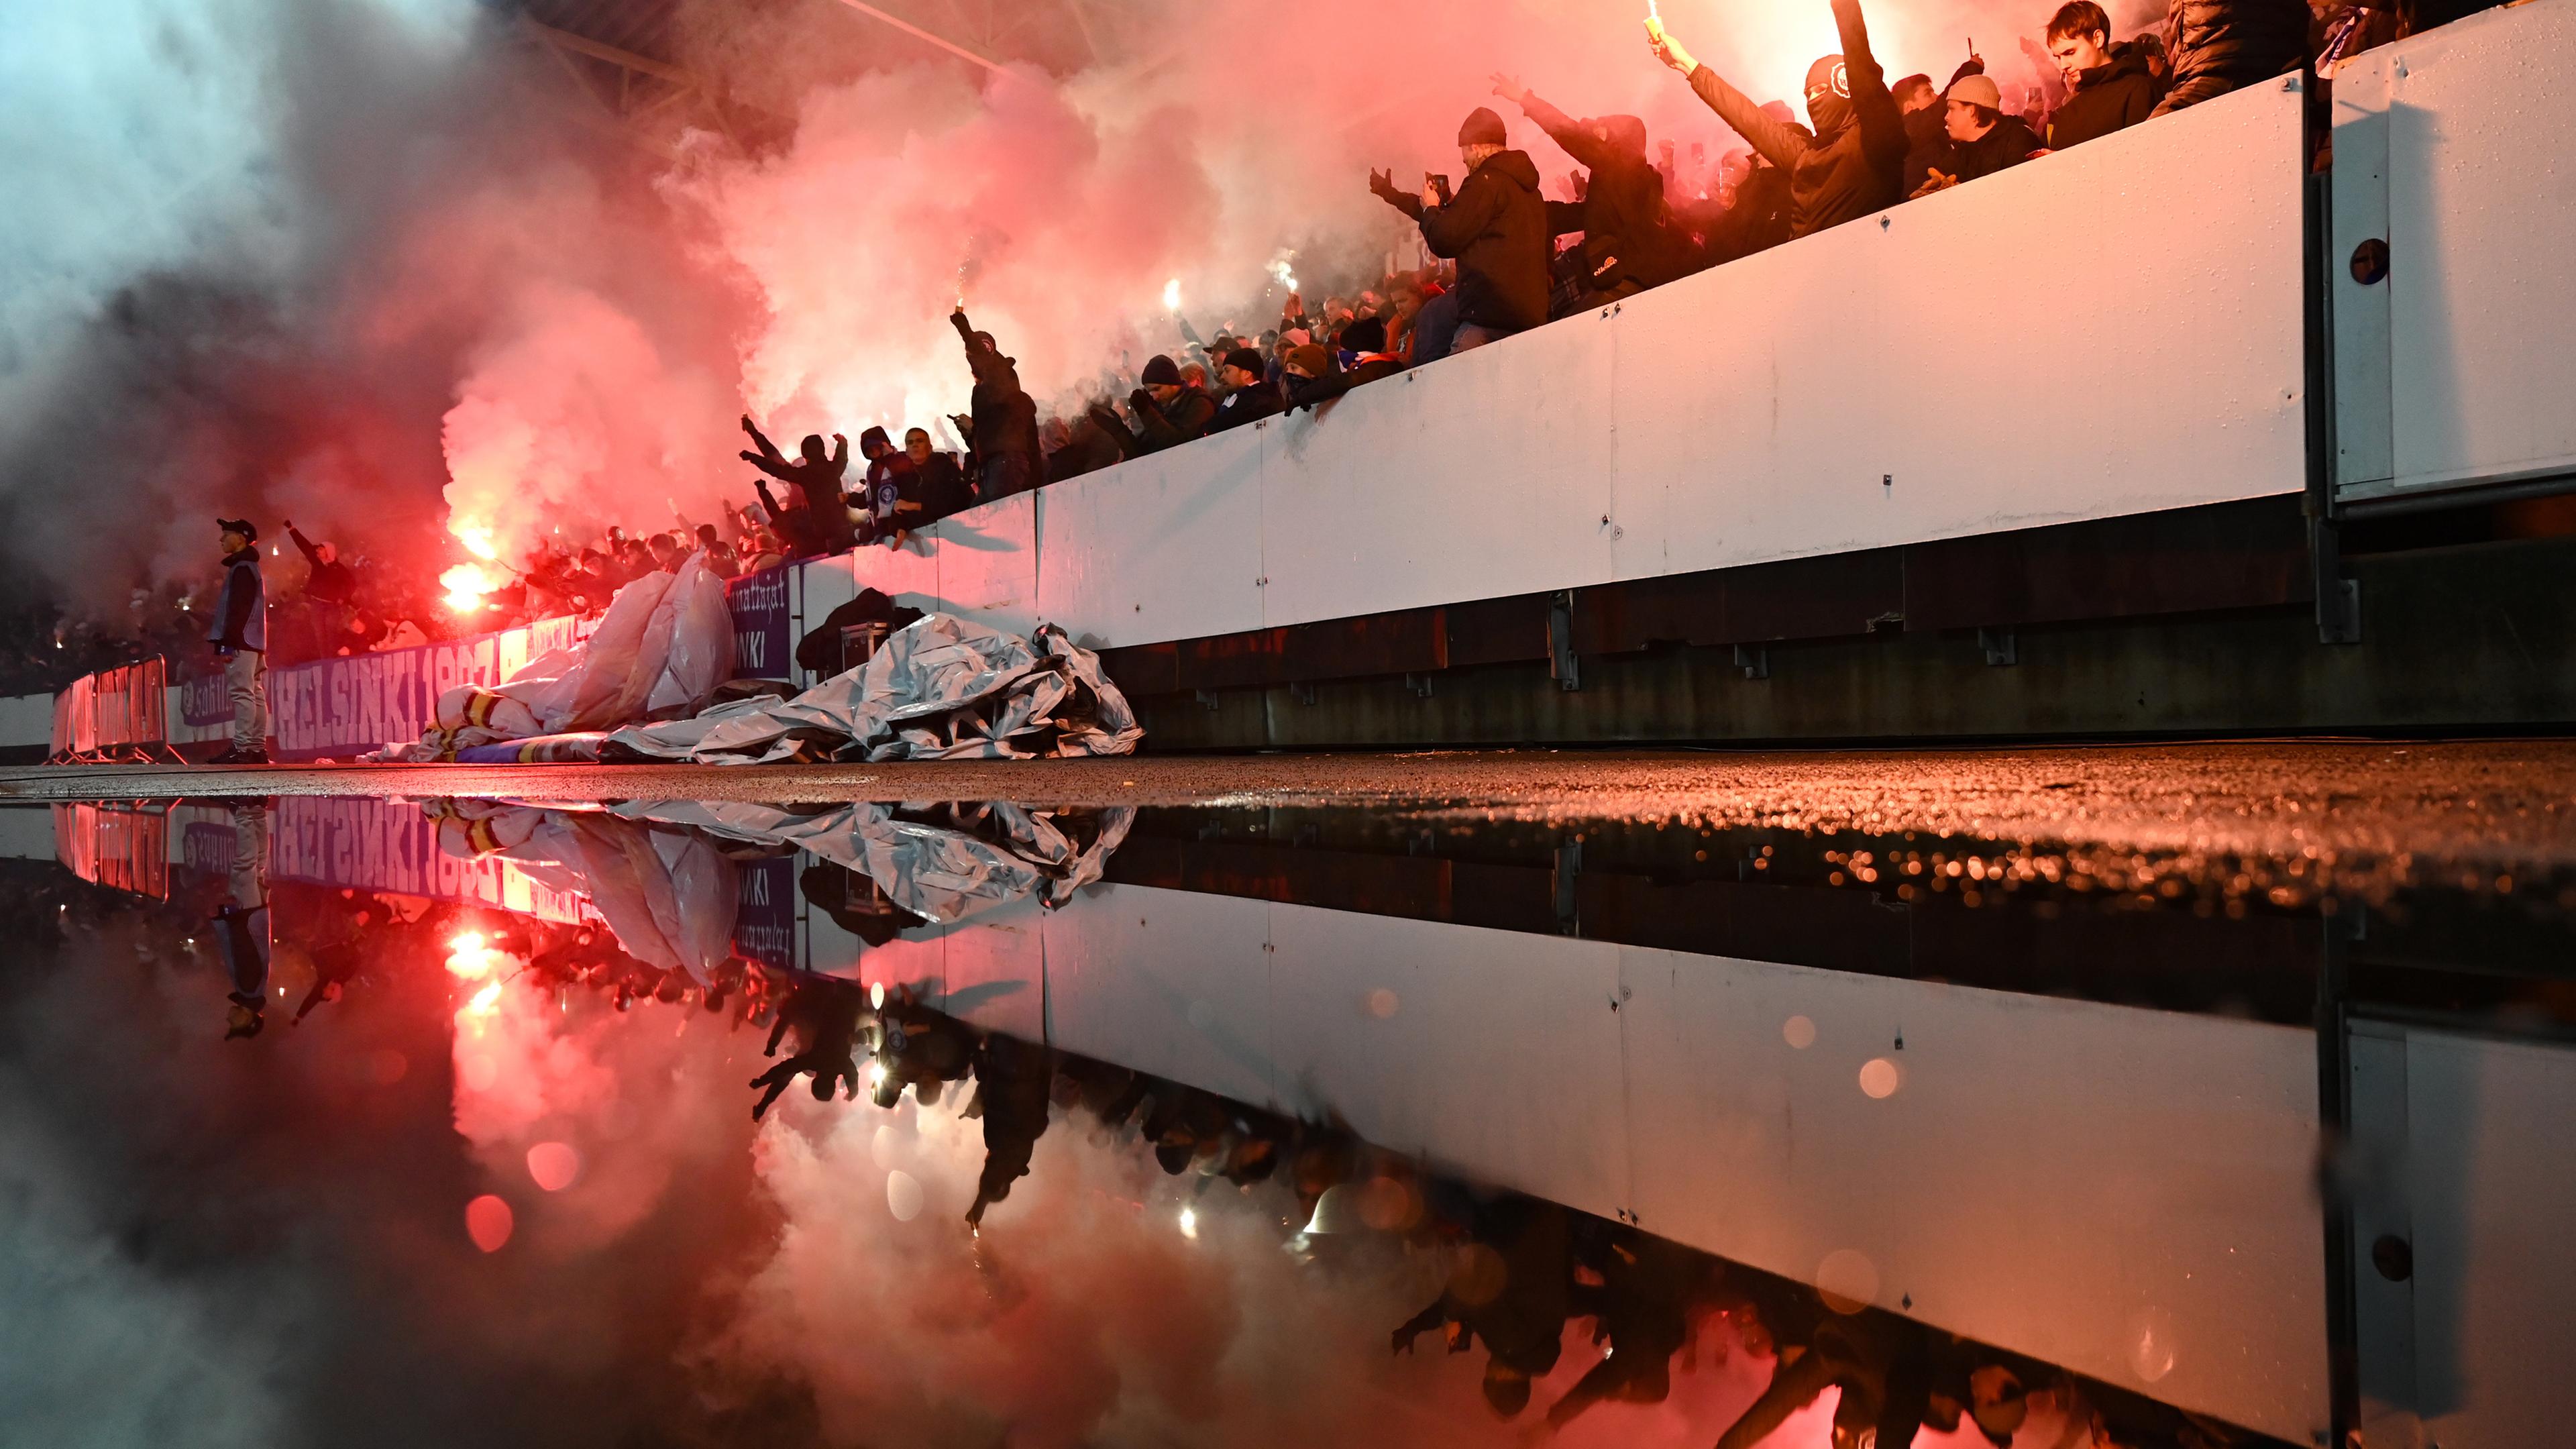 Finnland, Helsinki: Fußball: UEFA Europa Conference League, HJK Helsinki - Eintracht Frankfurt: Helsinkis Fans brennen im Fanblock Feuerwerkskörper ab.